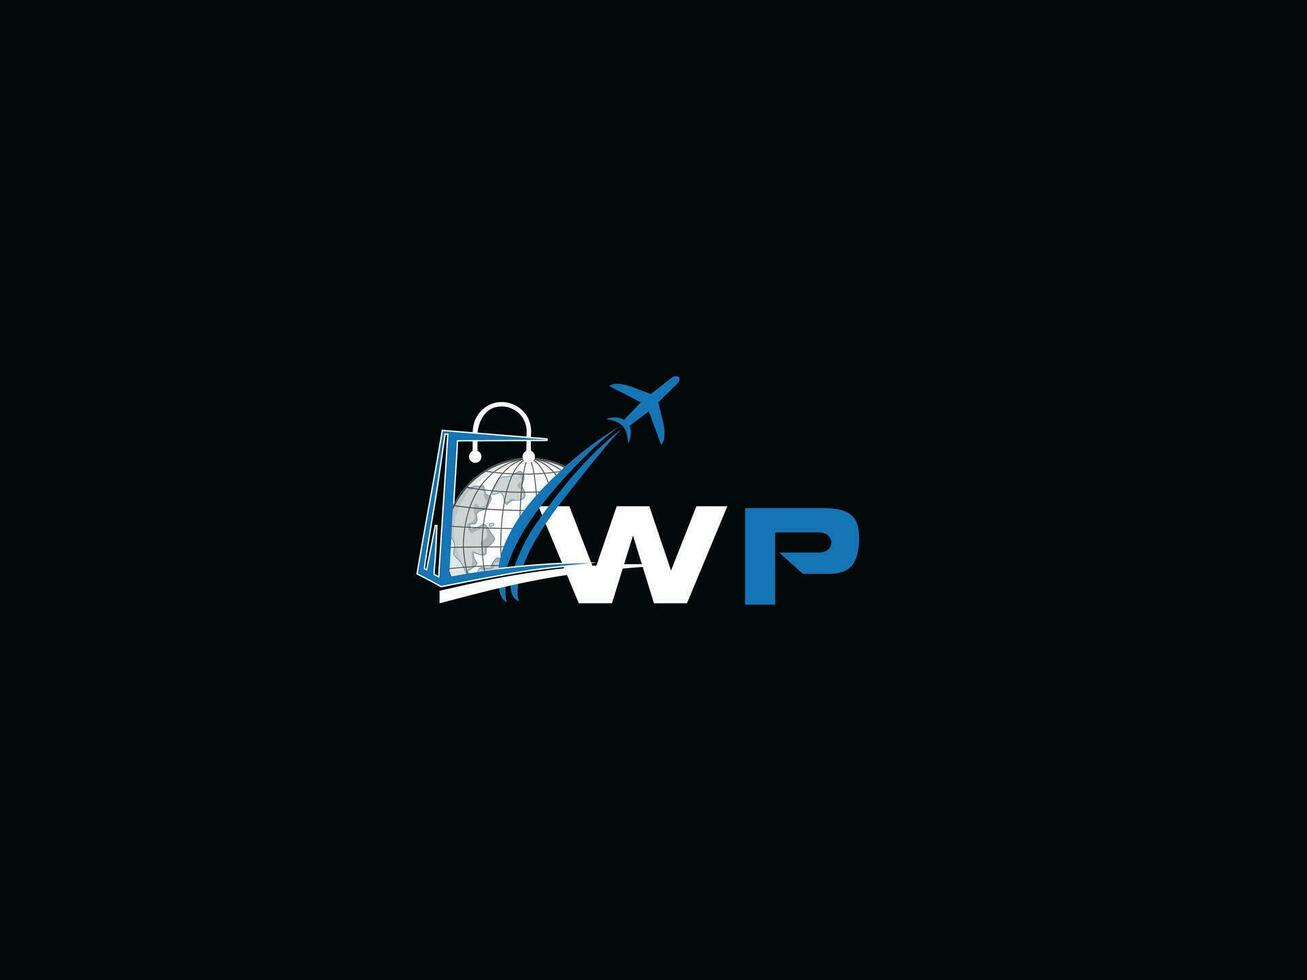 einzigartig Luft Reise wp Logo Symbol, kreativ global wp Initiale Reisen Logo Brief vektor